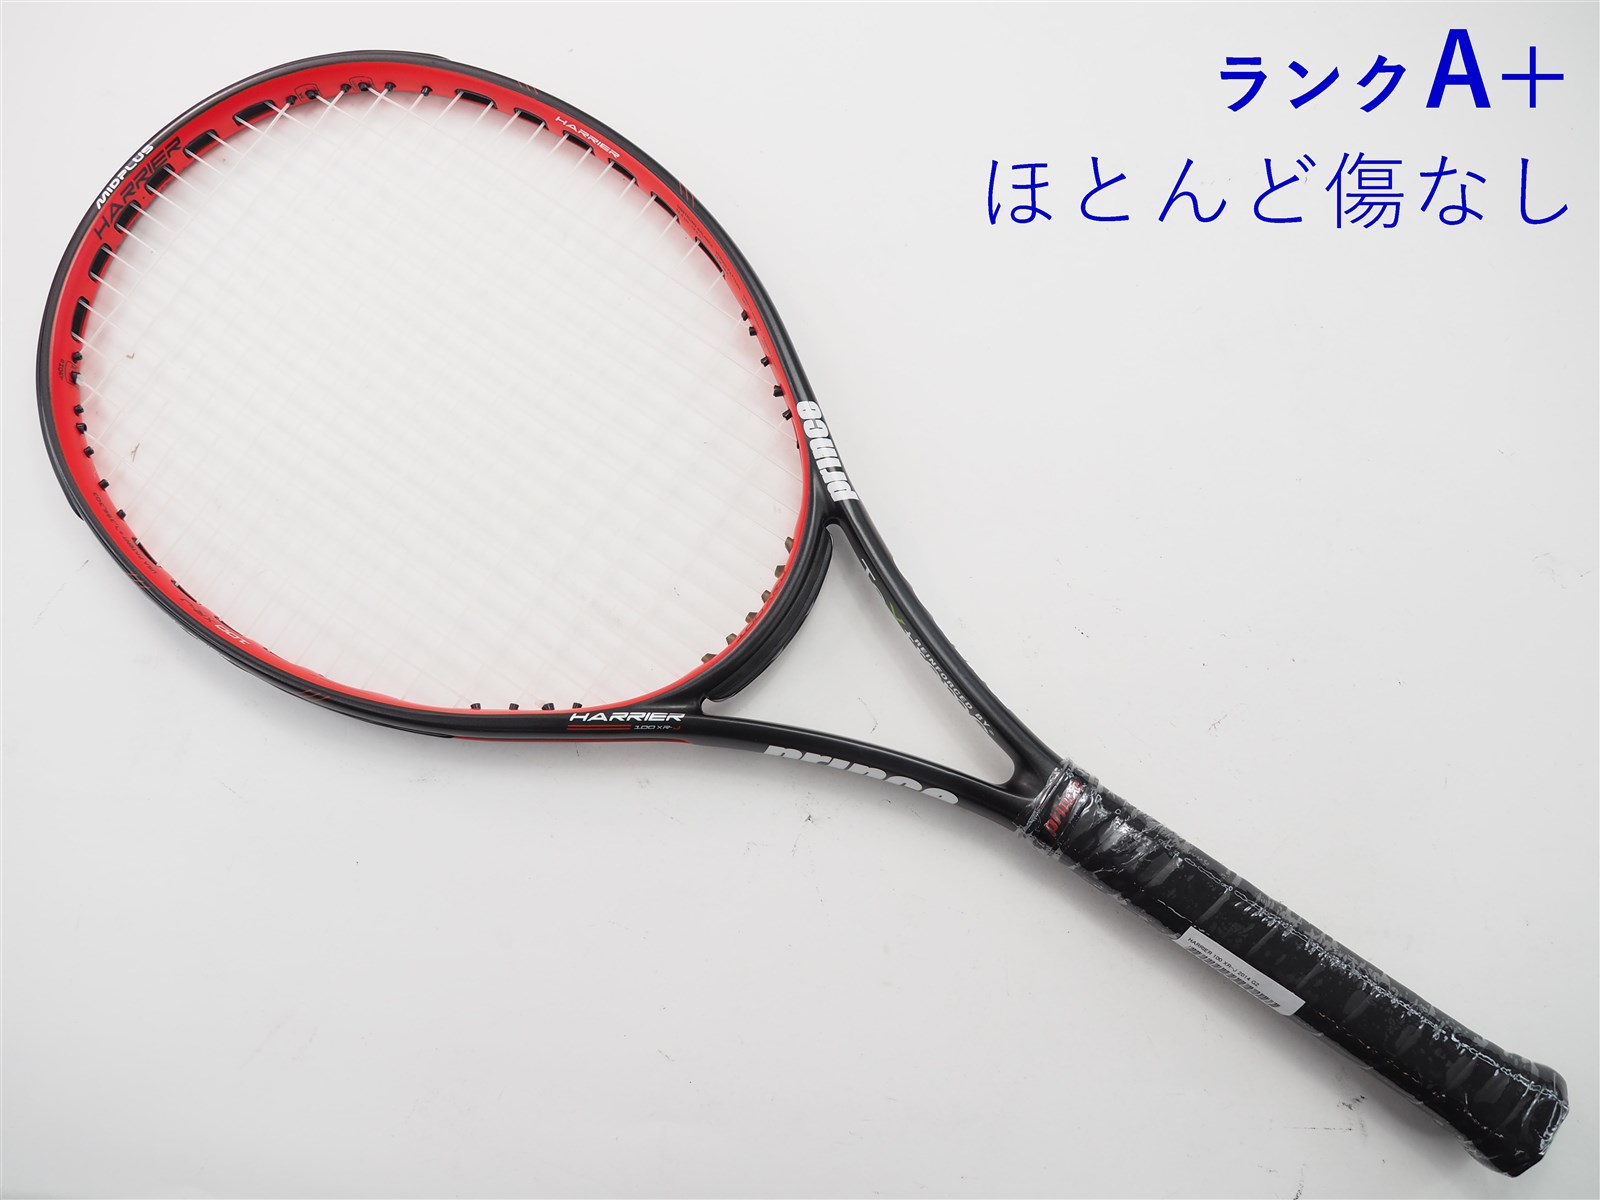 プリンス 硬式テニスラケット HARRIER 100XR-J ハリアー 100エックスアールジェイ 7T40G Prince テニス